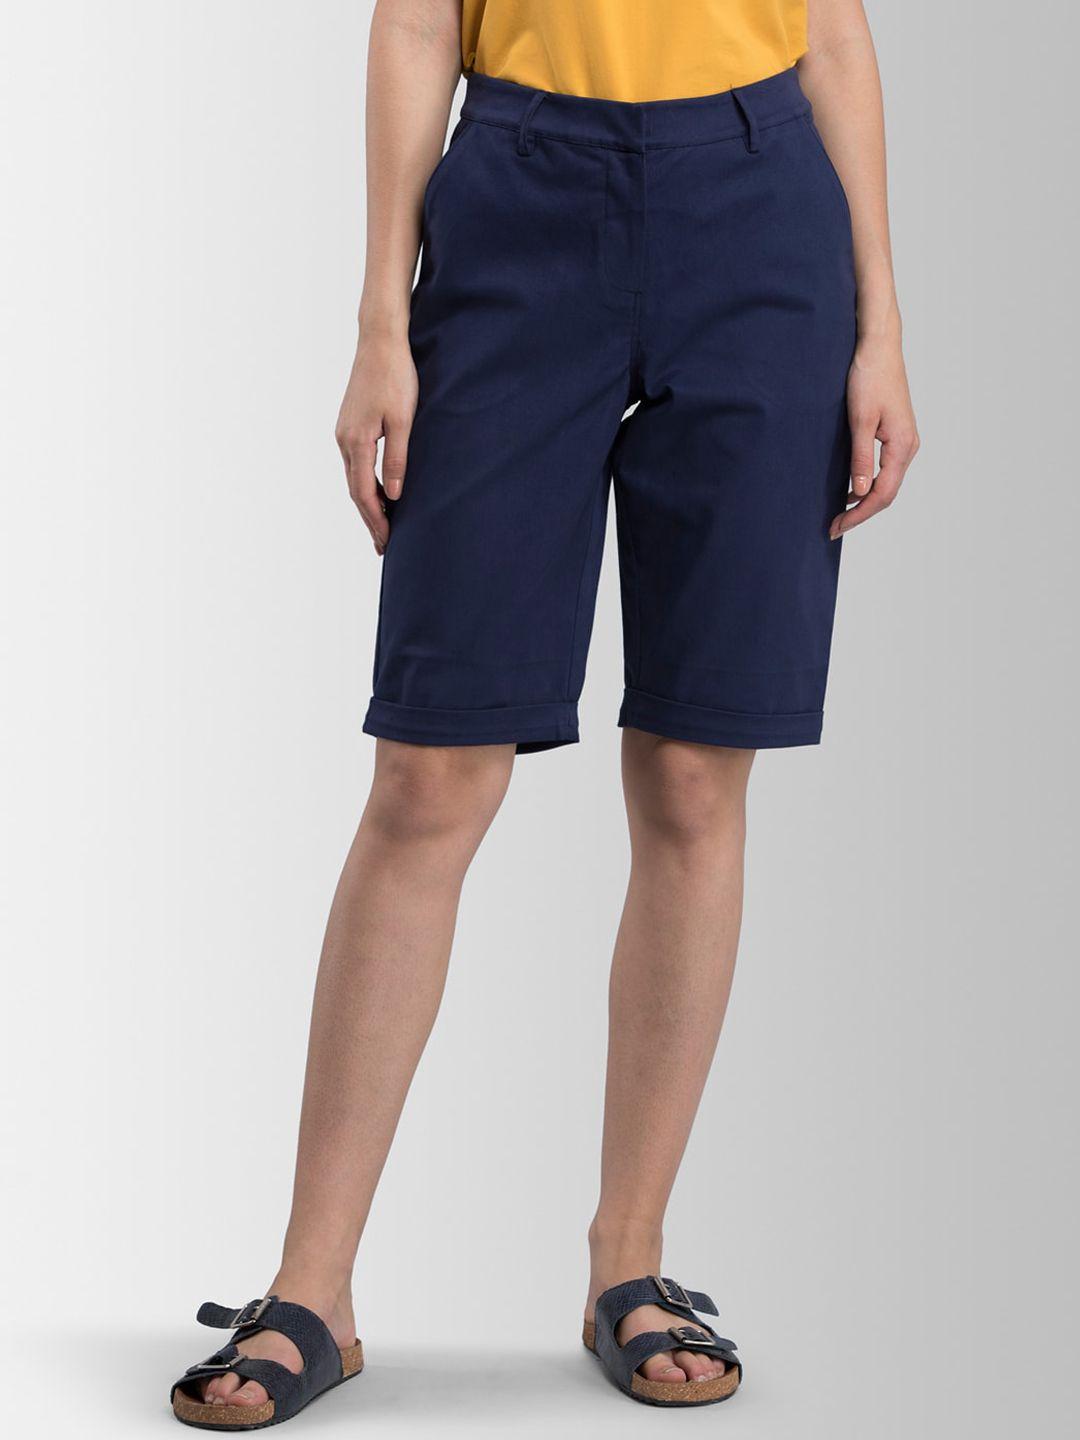 fablestreet women navy blue solid regular shorts